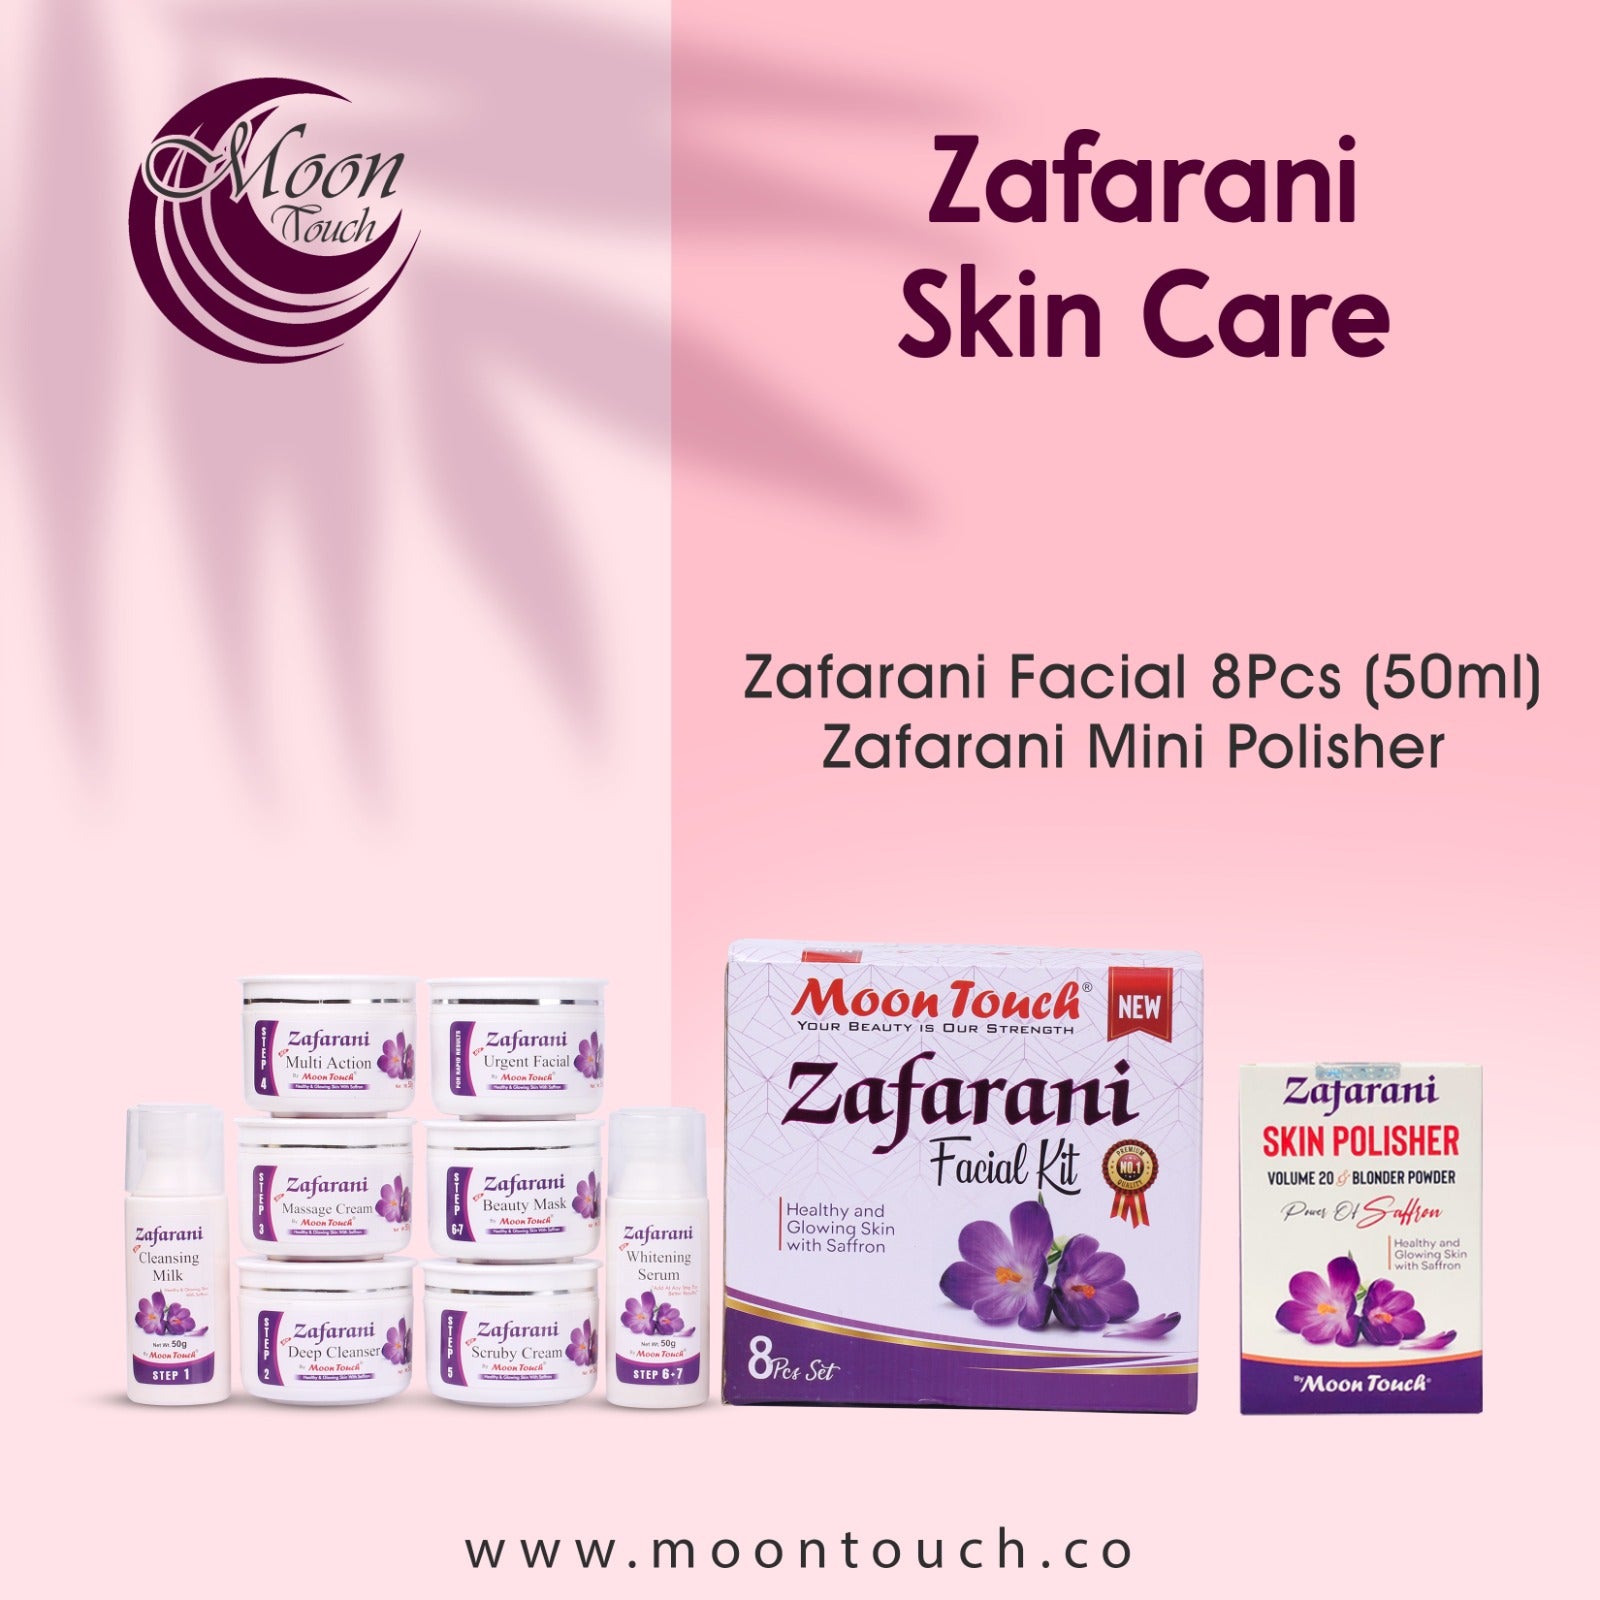 Zafarani Facial + Skin Polisher - Moon Touch